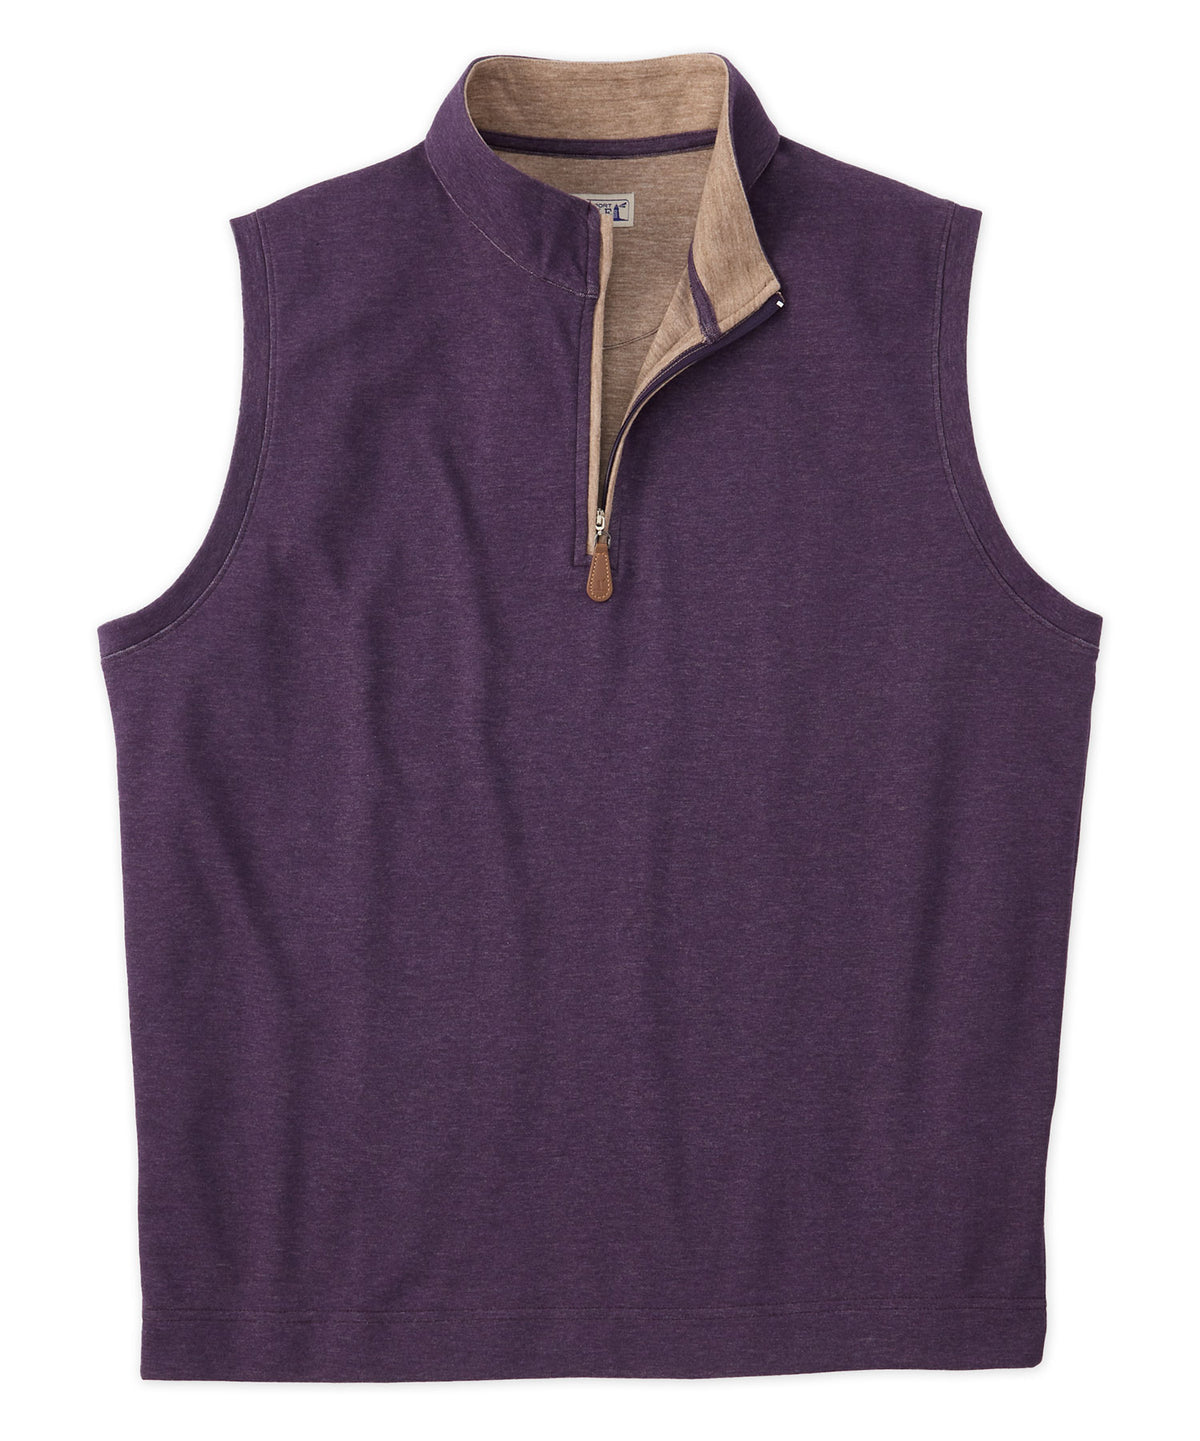 Westport Lifestyle Melange Quarter-Zip Vest, Men's Big & Tall